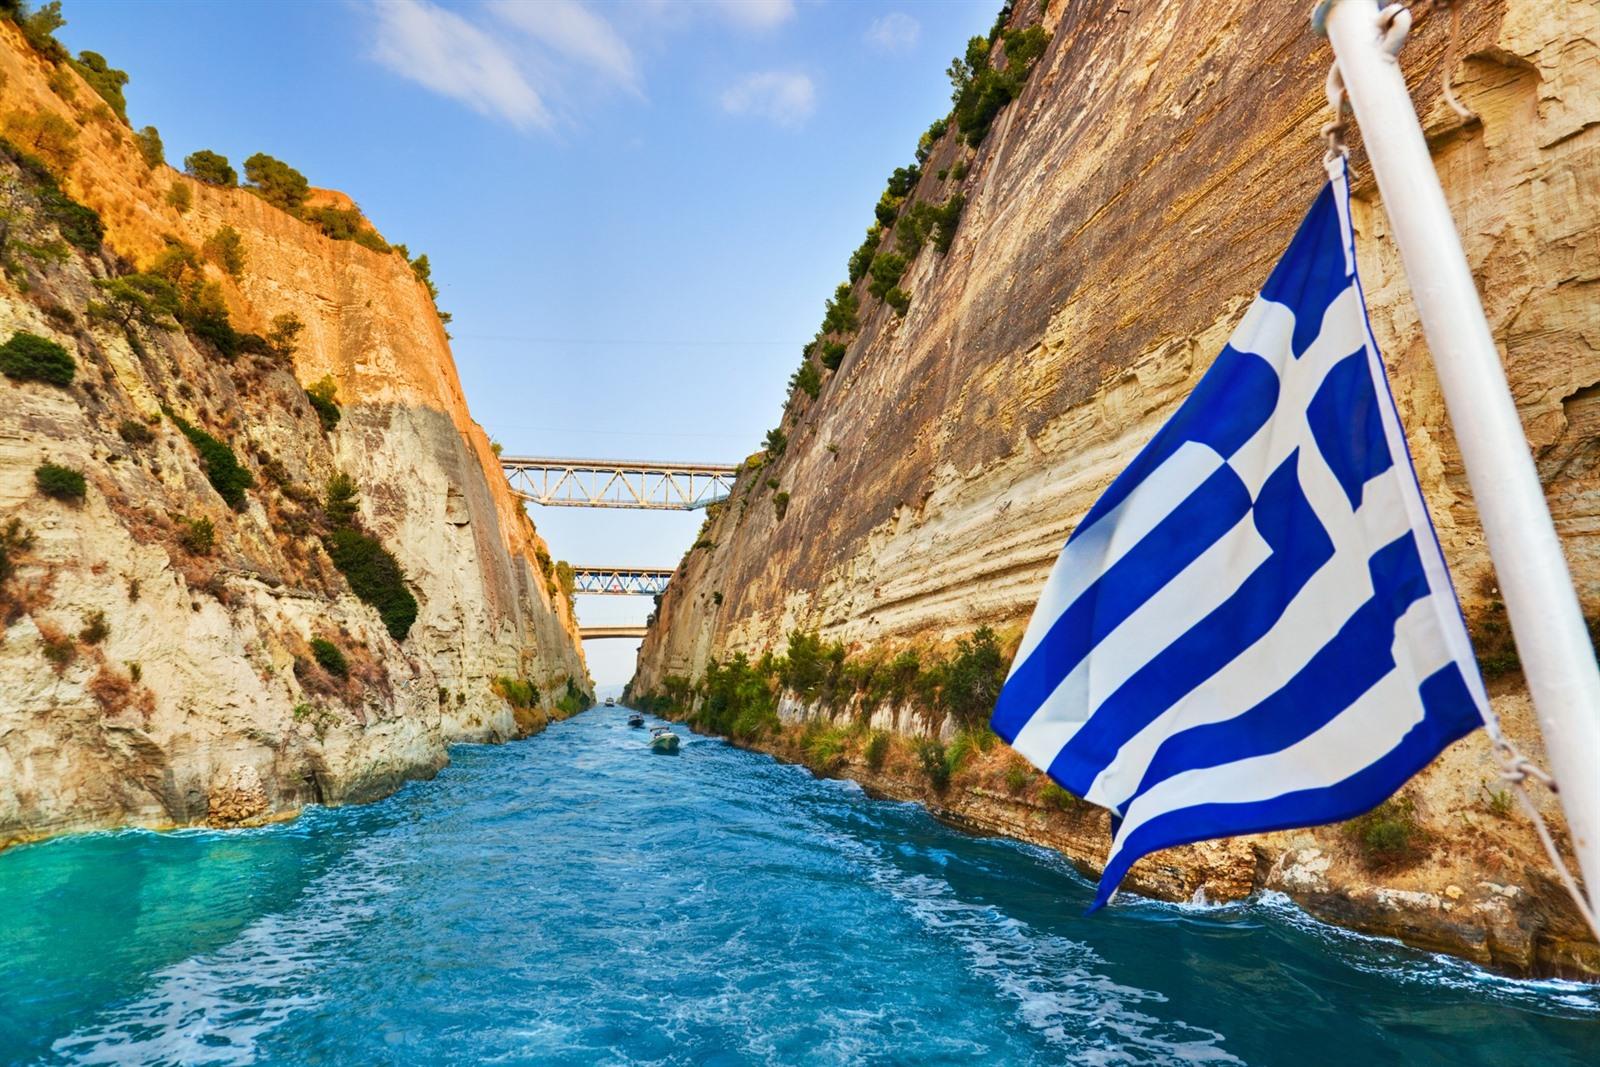 Rondreis Griekenland met auto: met roadtrip + kaartje